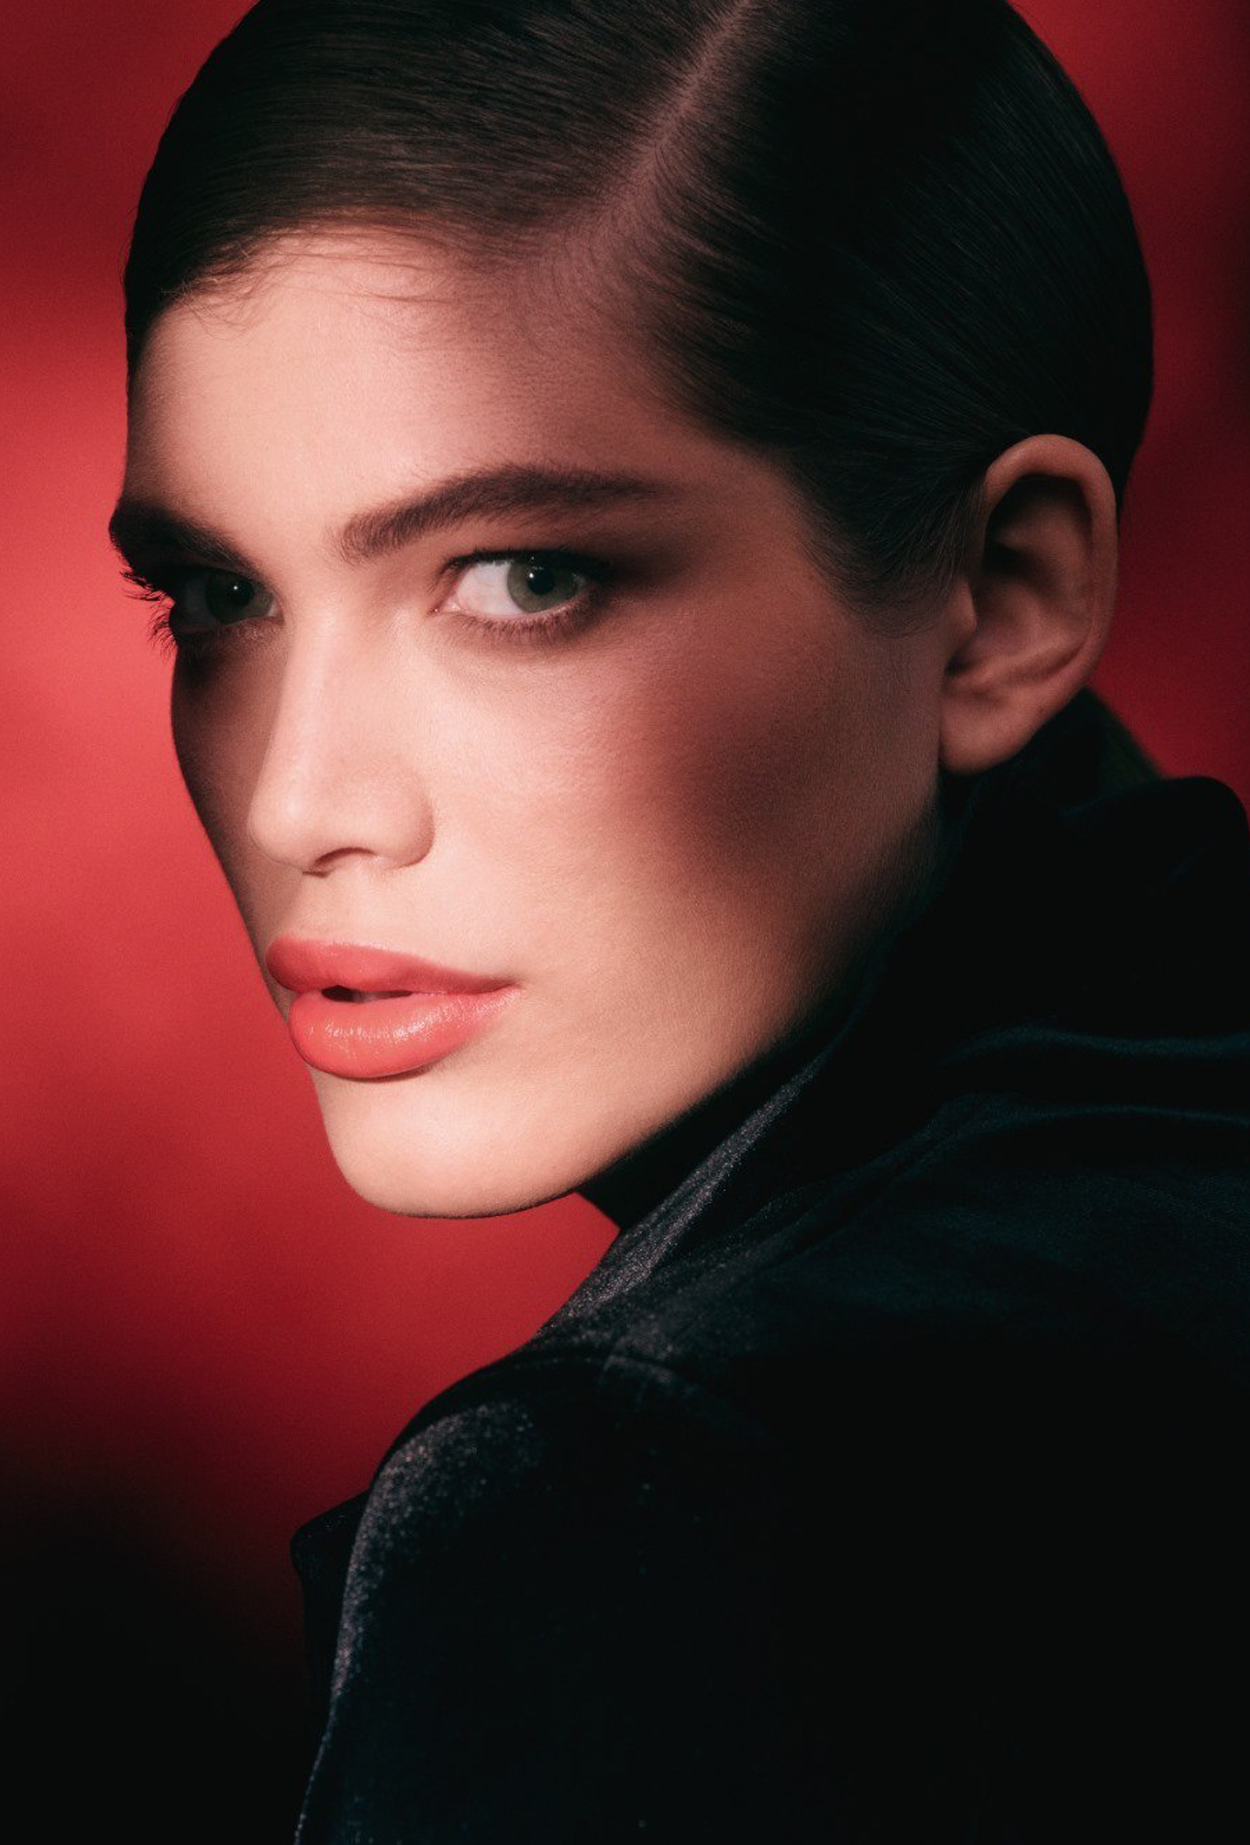 Трансгендерная модель Валентина Сампайо – новое лицо Armani beauty